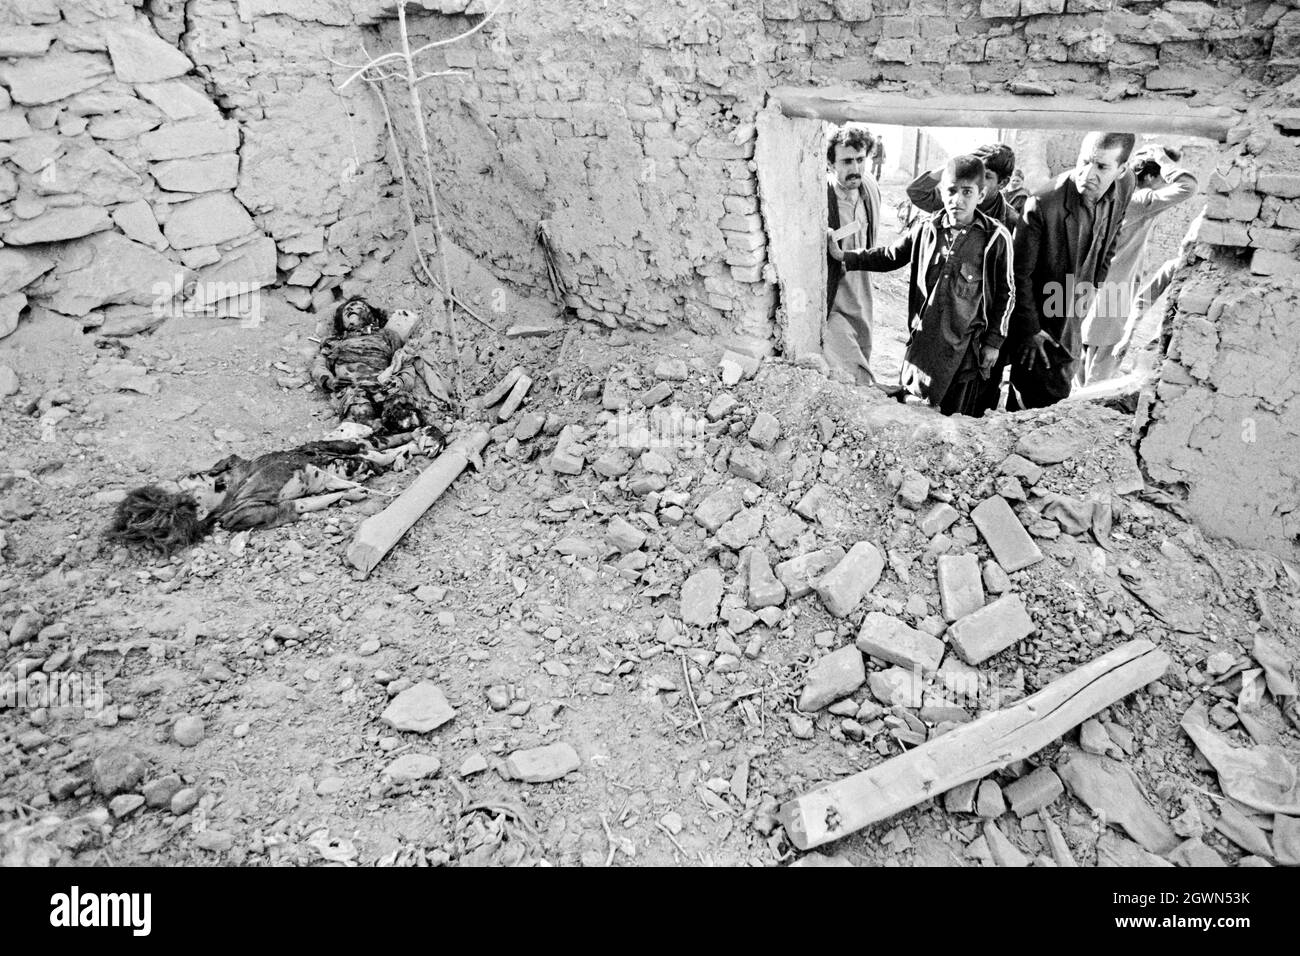 KABOUL, AFGHANISTAN. 16 avril 1988. Les voisins regardent avec horreur le carnage qui a fait suite à une attaque à la roquette qui a tué deux jeunes filles jouant dans une cour dans le quartier résidentiel de Karte-Ye-Sakhi le 16 avril 1988 à Kaboul, en Afghanistan. La fusée, tirée par les moudjahidines afghans, a frappé la maison tuant instantanément les jeunes filles. Banque D'Images